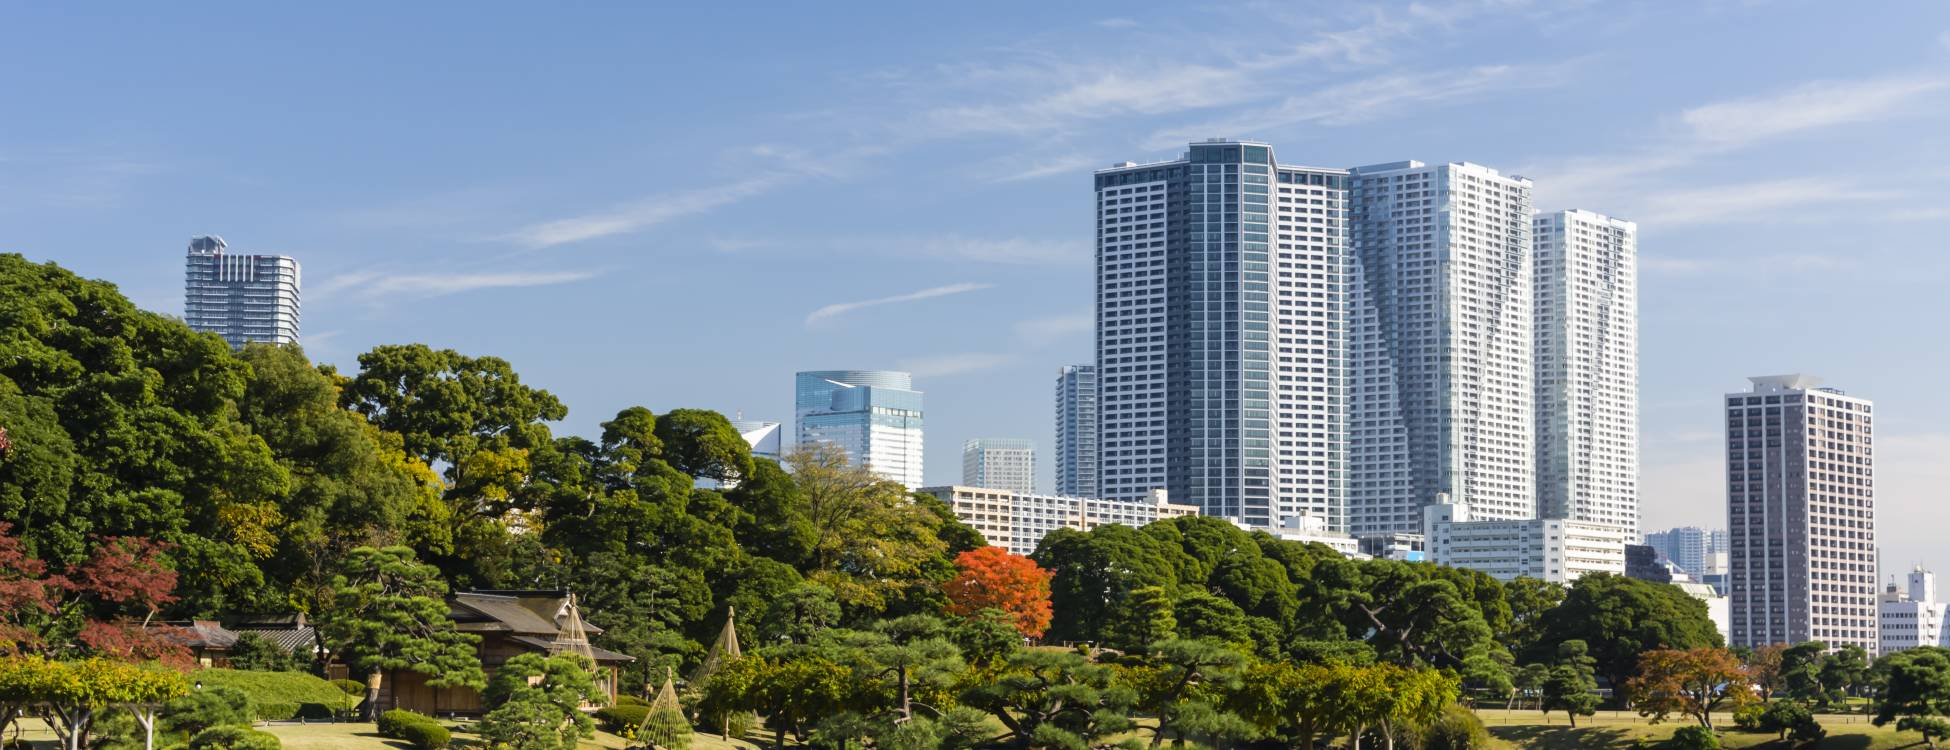 公園 庭園 東京旅遊官方網站go Tokyo